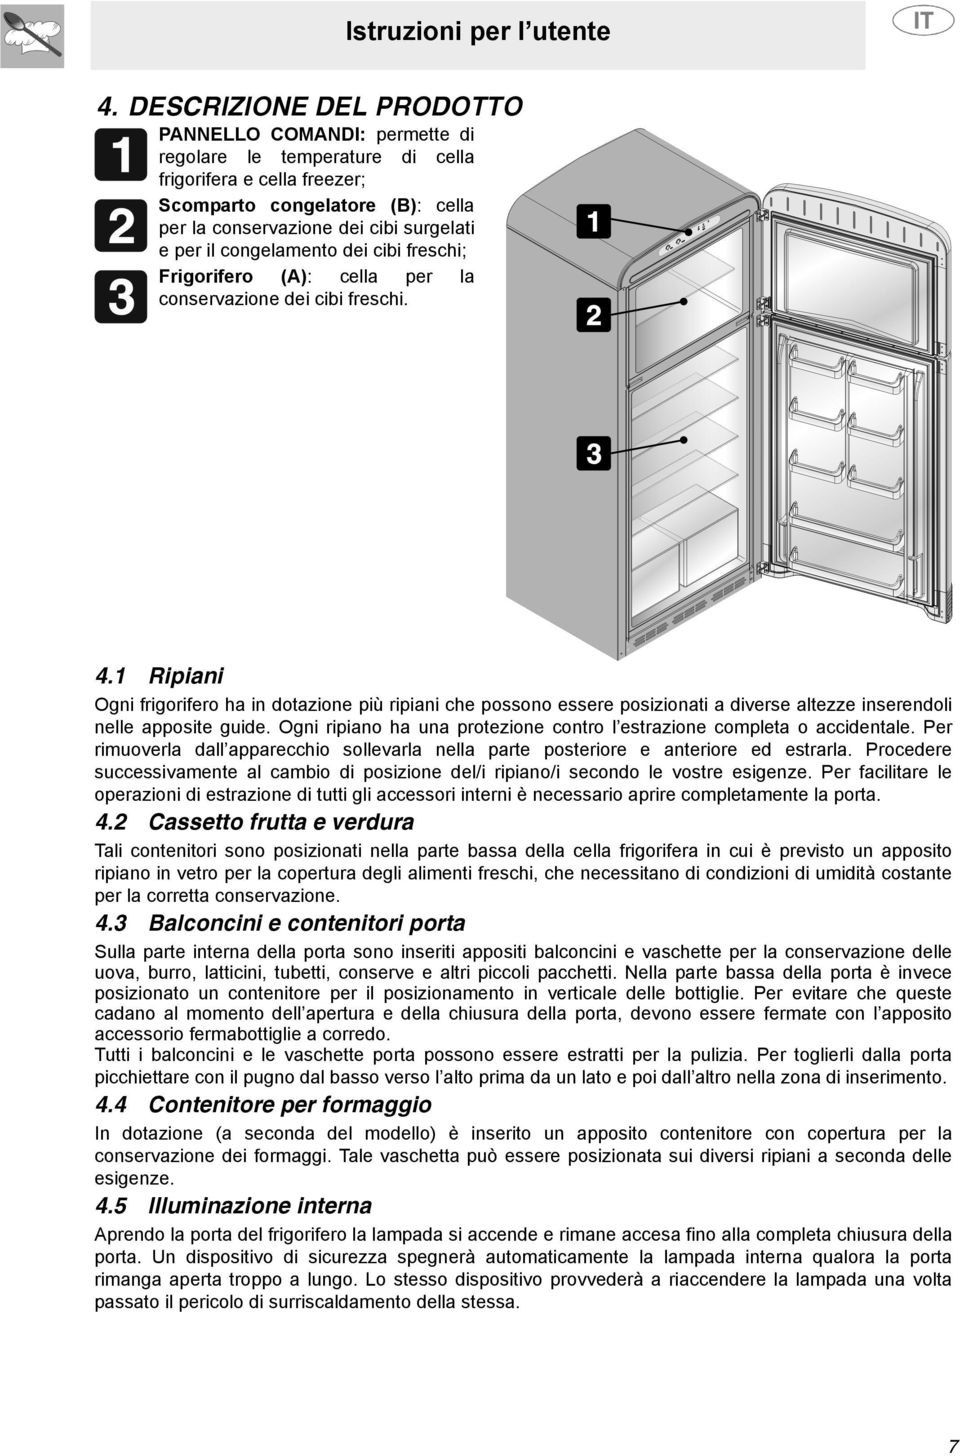 1 Ripiani Ogni frigorifero ha in dotazione più ripiani che possono essere posizionati a diverse altezze inserendoli nelle apposite guide.